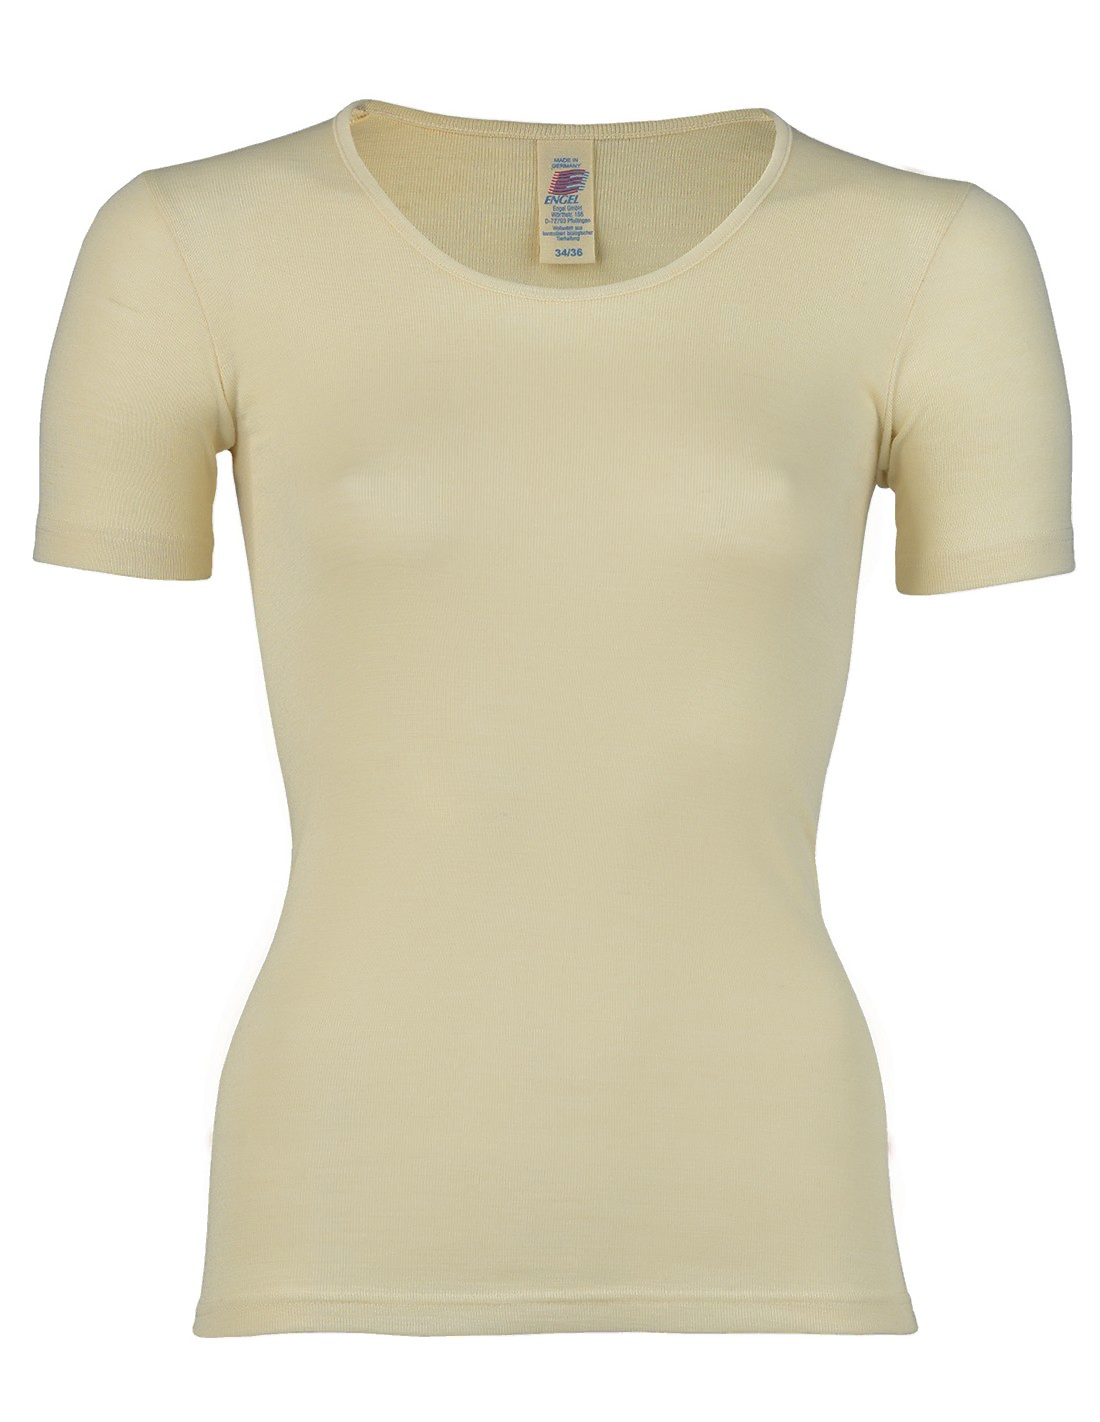 Image of Dames T-Shirt Zijde Wol Engel Natur, Kleur Gebroken wit, Maat 34/36 - Small